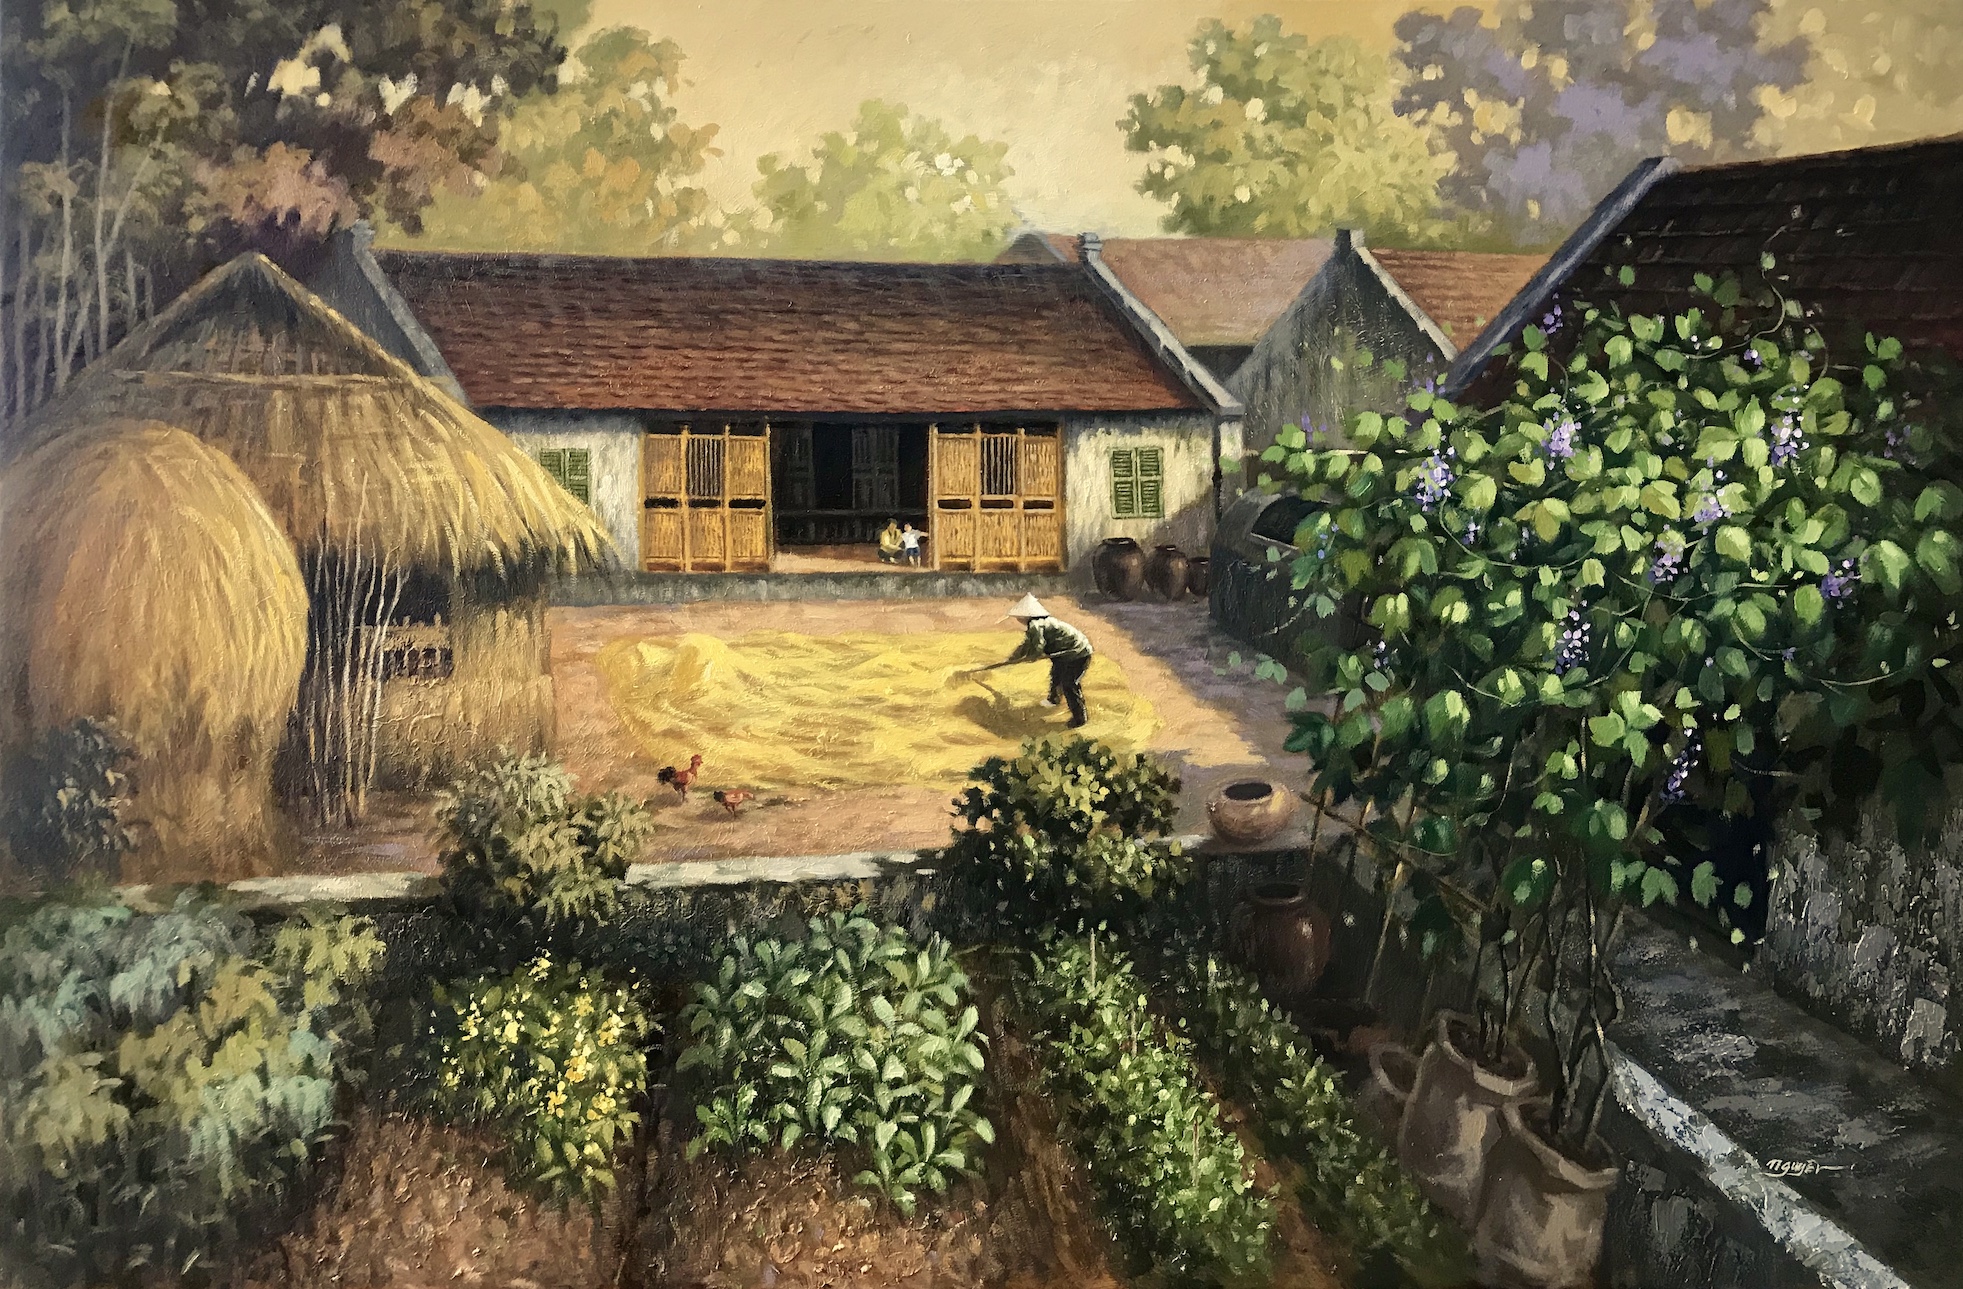 Tuổi thơ quay về với bộ tranh làng quê của chàng họa sĩ trẻ